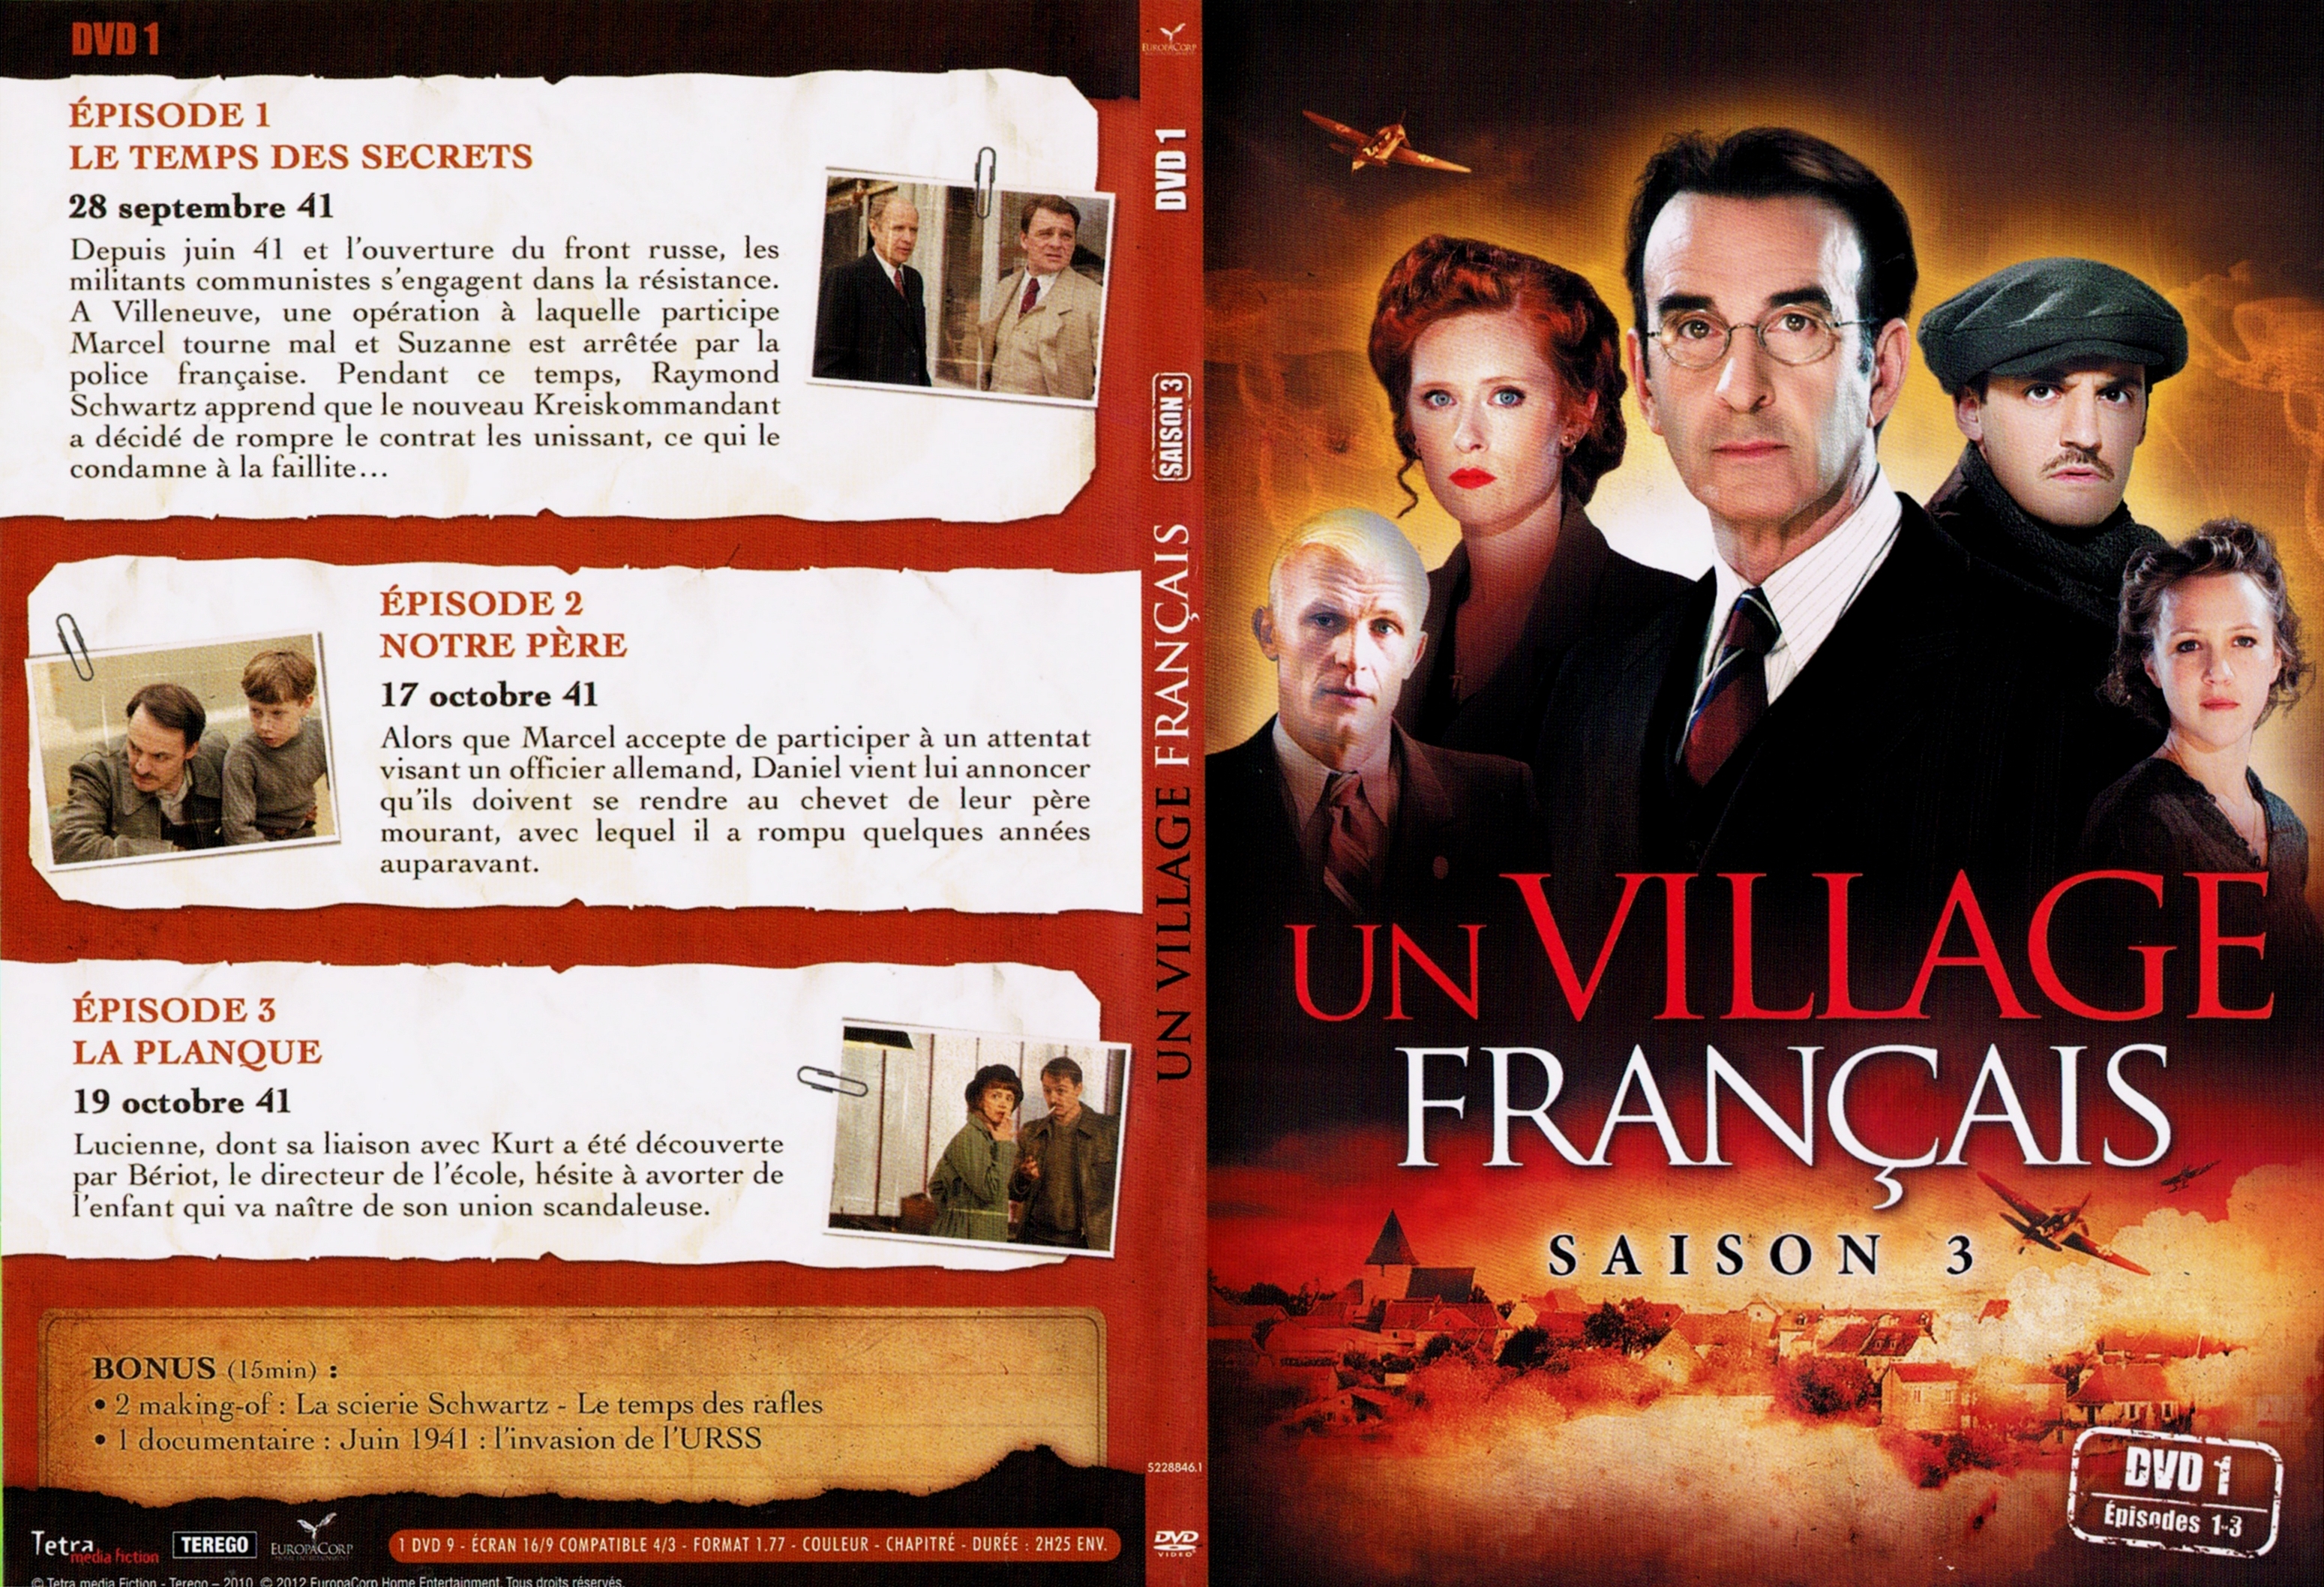 Jaquette DVD Un village francais Saison 3 DVD 1